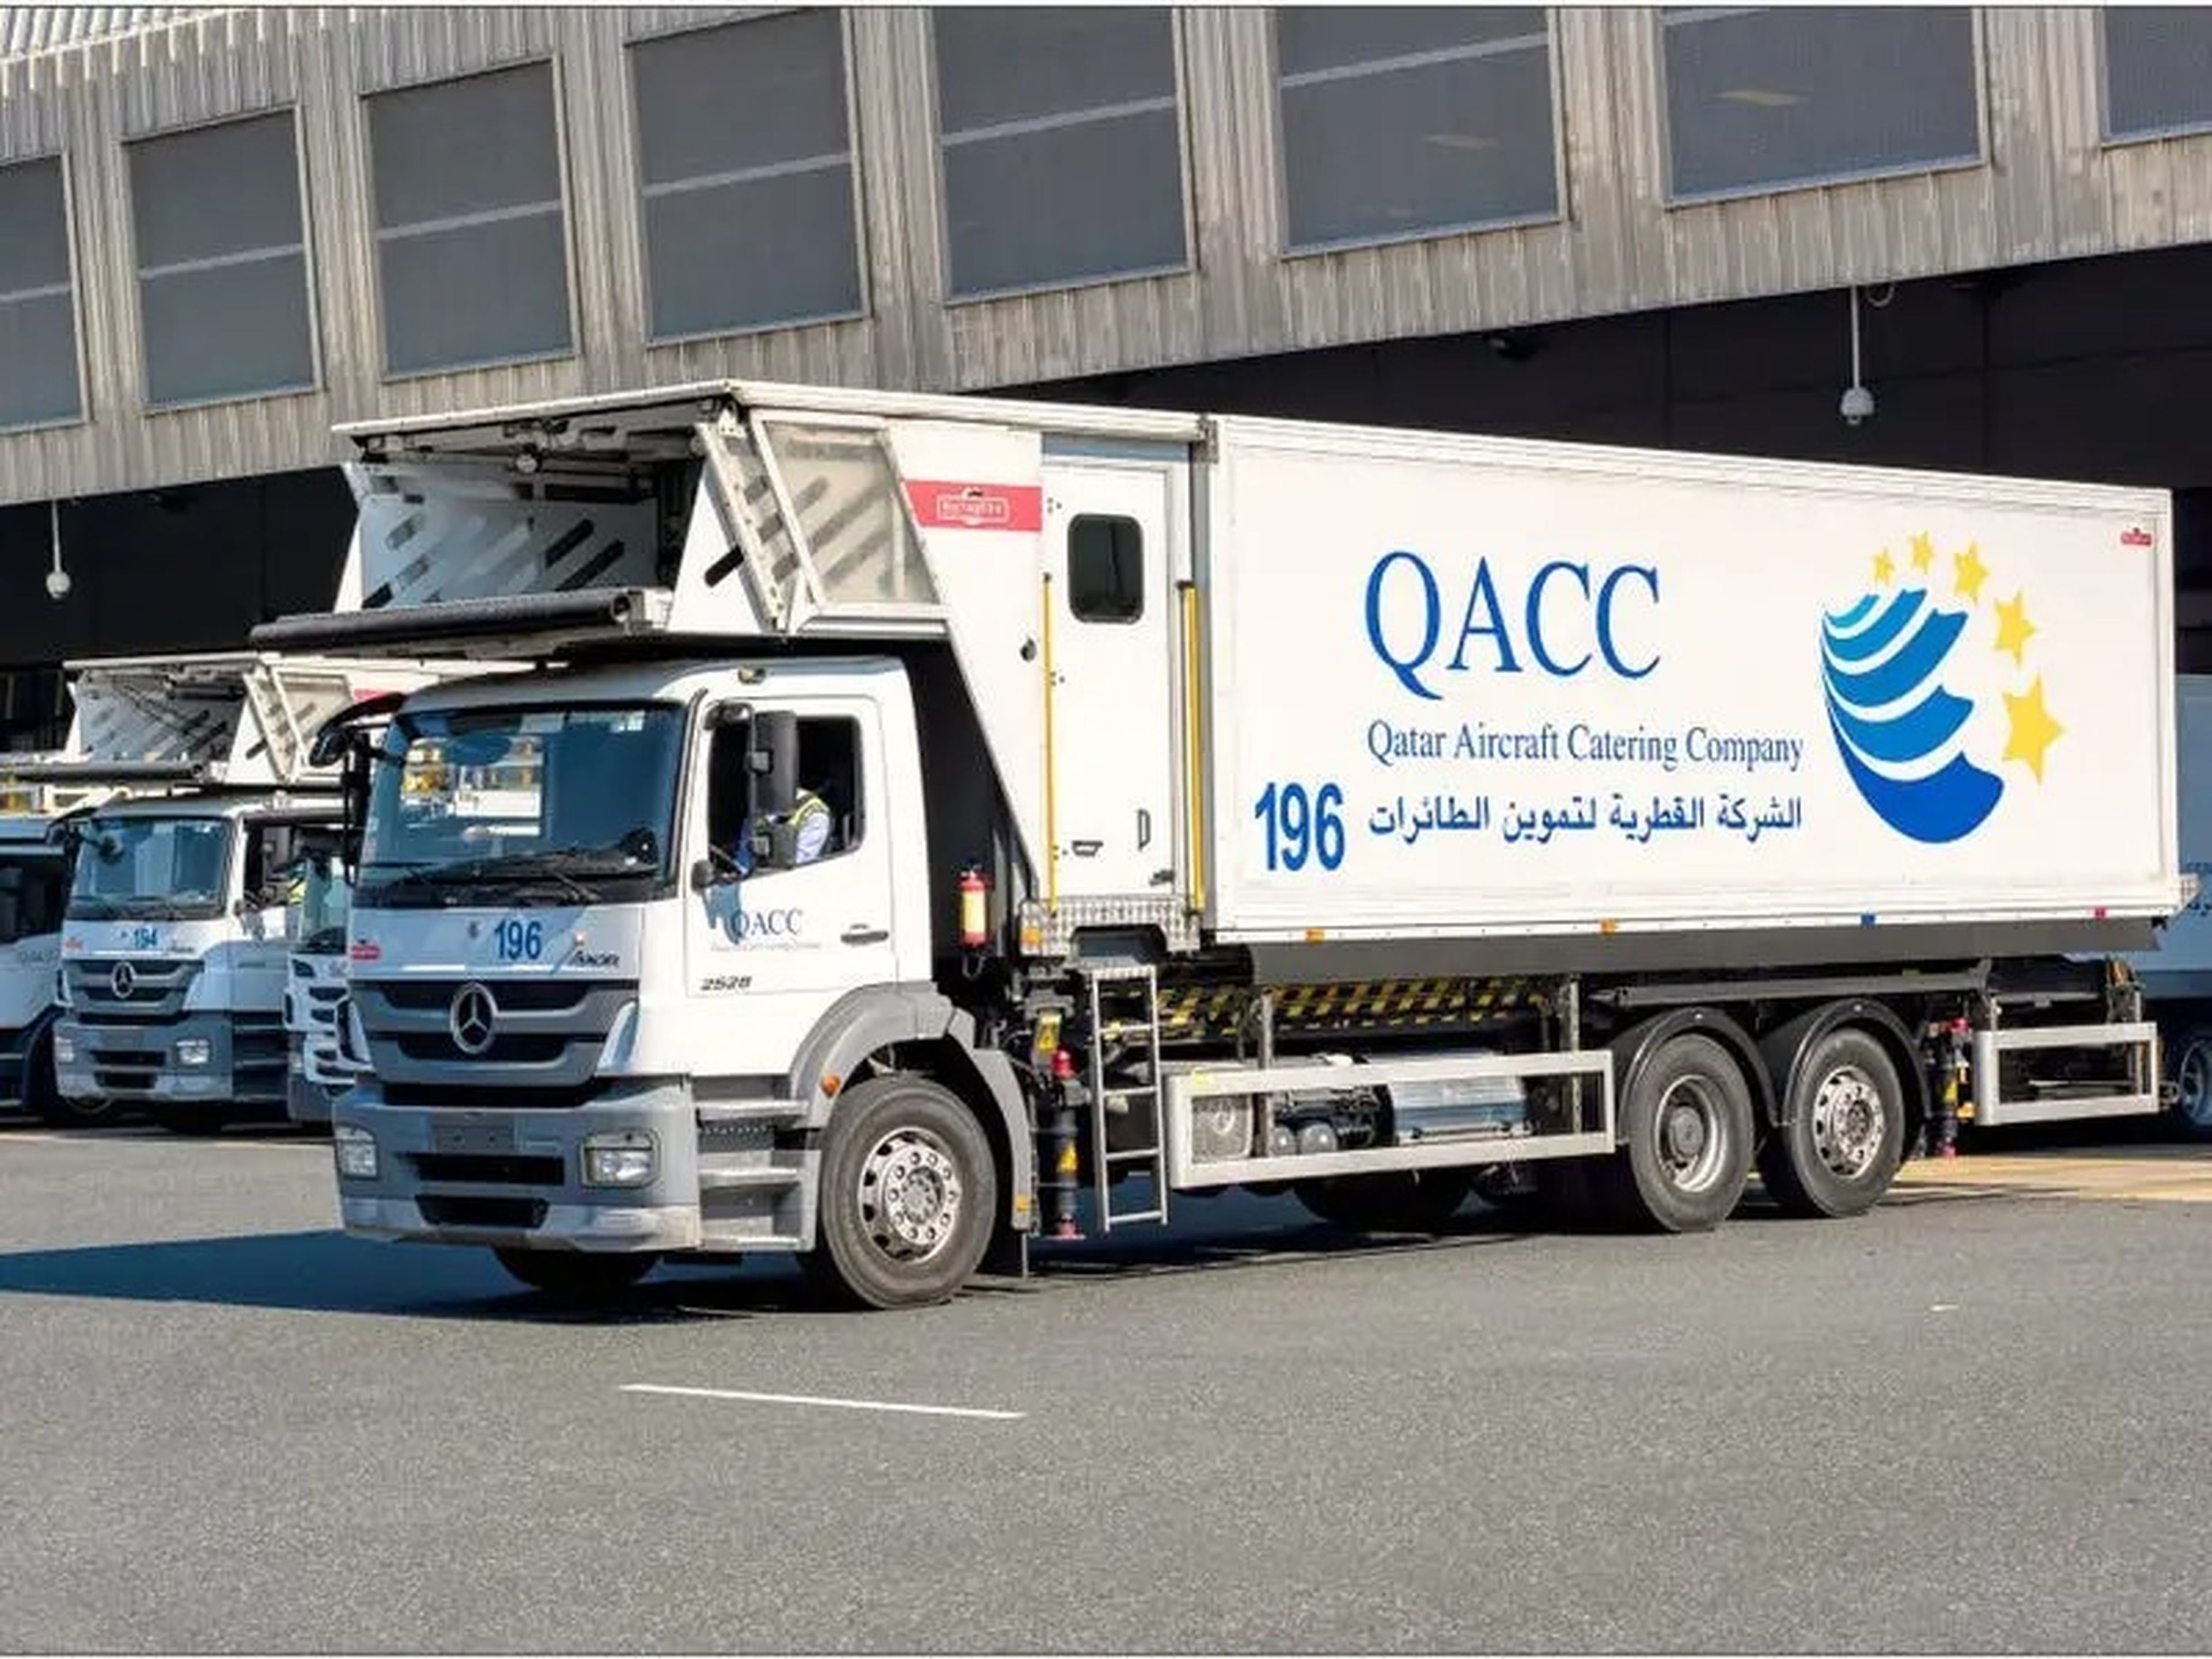 Qatar Airways' catering truck.